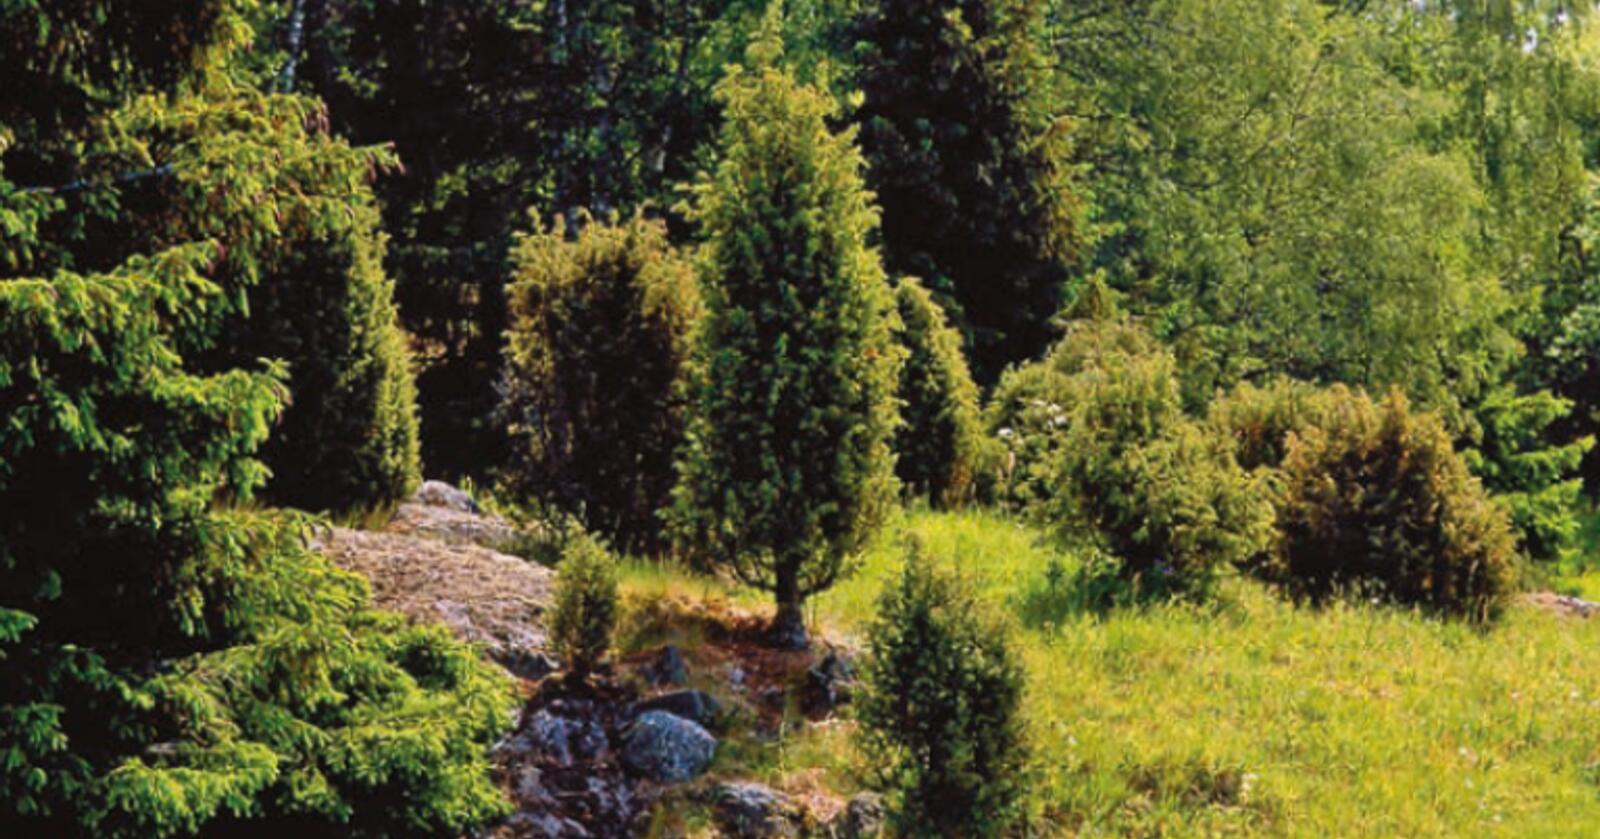 Arv og miljø: Einer kan være lavtvoksende og krypende busker eller høyreiste, søyleformede trær. Vokseformen er dels bestemt av genene og dels av miljøforholdene. Noen ganger er det bare genene som bestemmer. Foto: Svein Grønvold